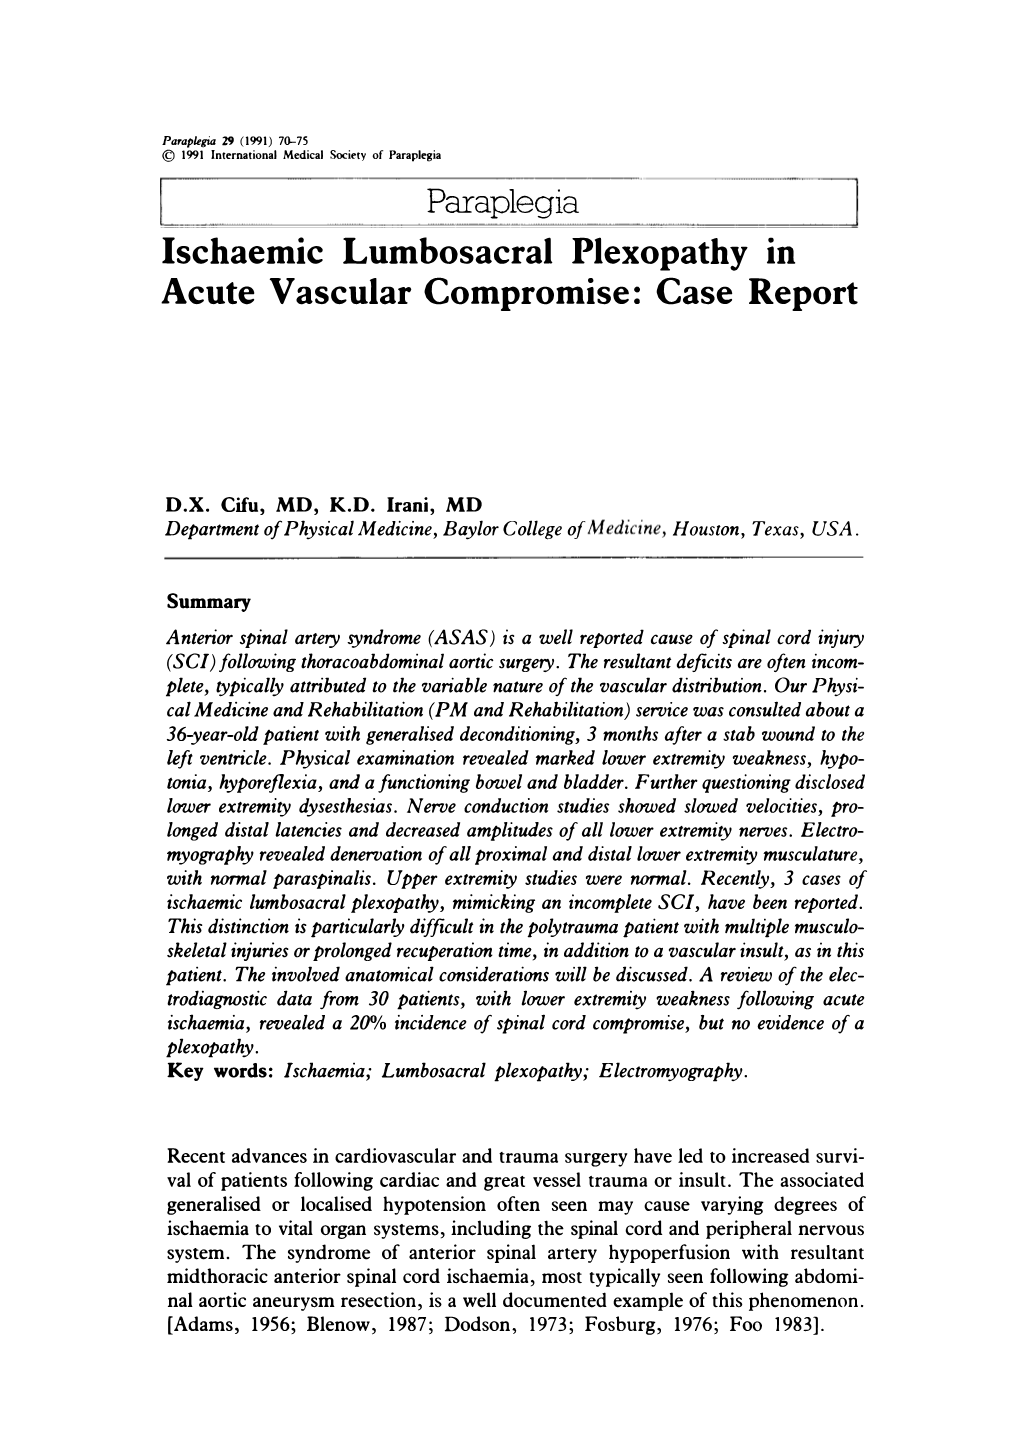 Ischaemic Lumbosacral Plexopathy in Acute Vascular Compromise:Case Report